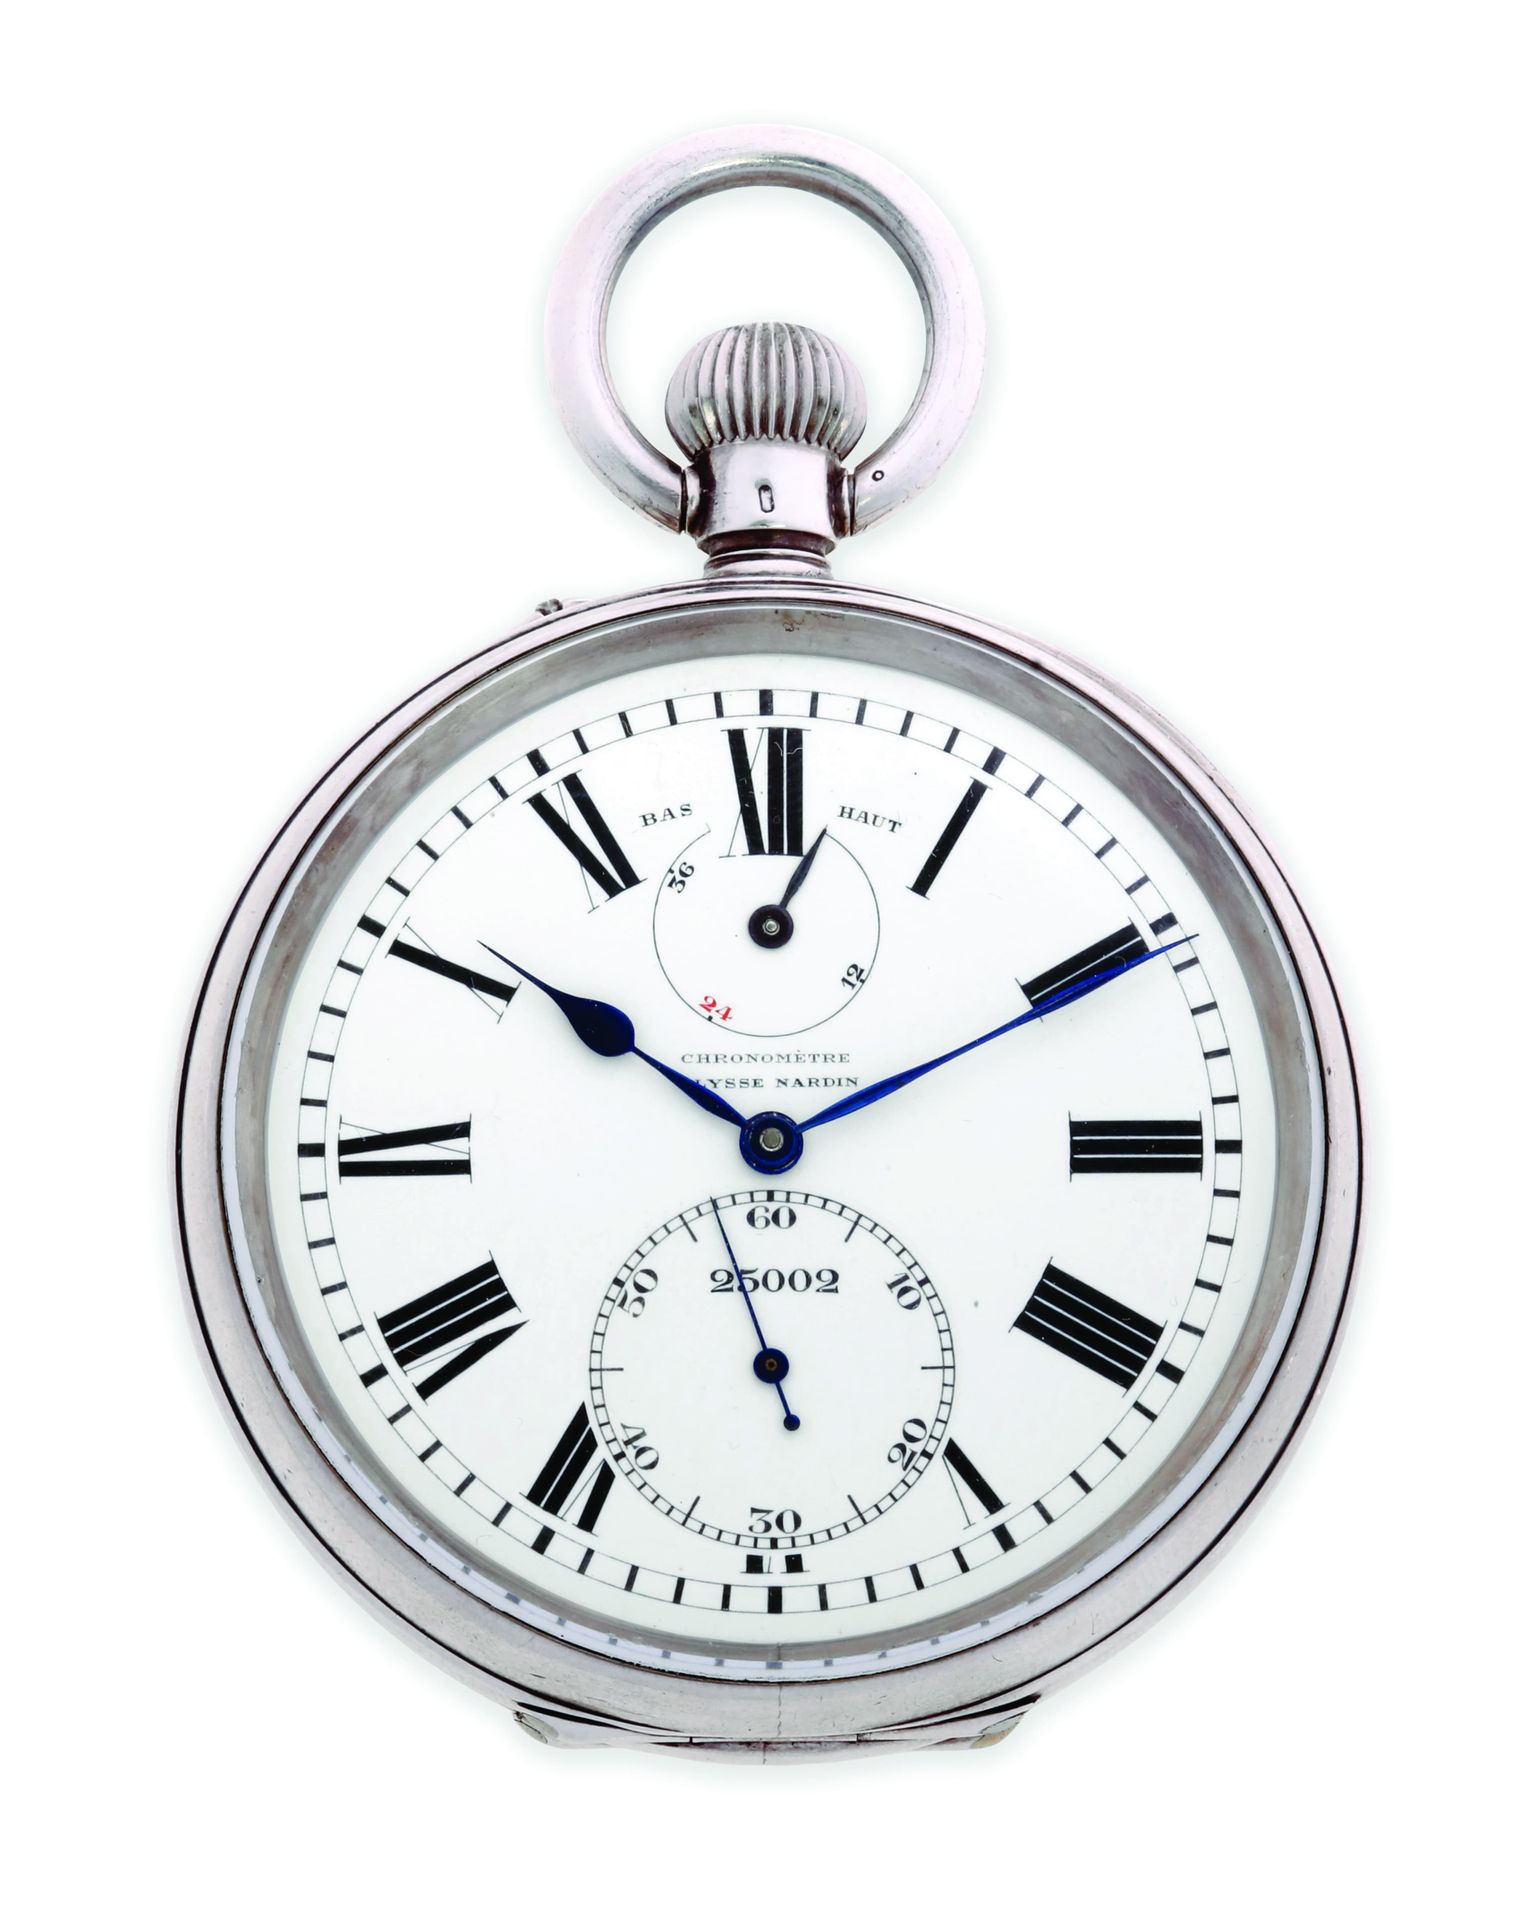 ULYSSE NARDIN Chronometer 25002
Taschenuhr aus Silber 925 Tausendstel mit mechan&hellip;